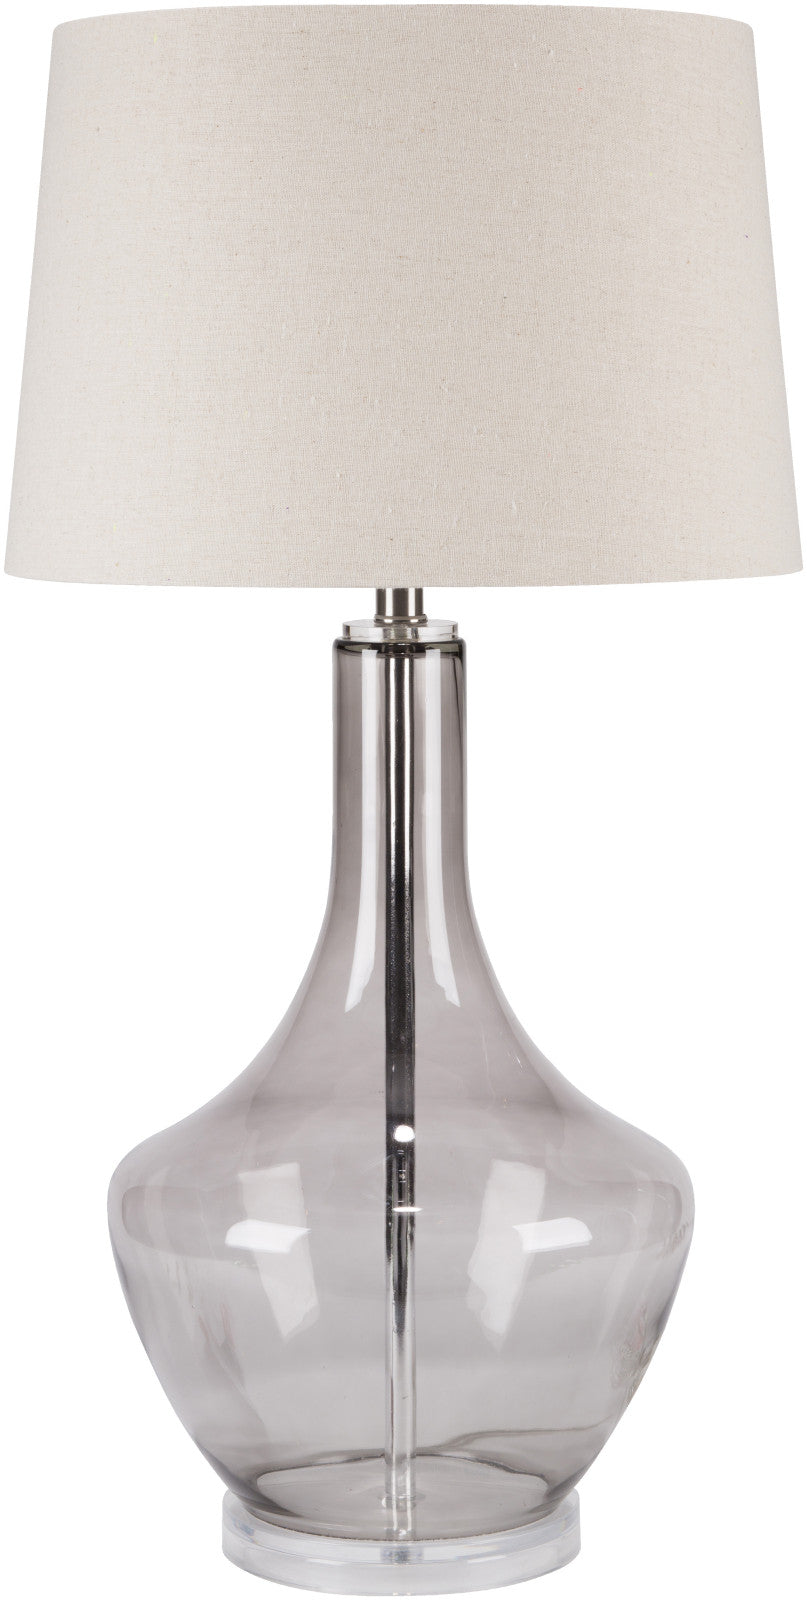 Surya Easton ENLP-002 Oatmeal Lamp Table Lamp